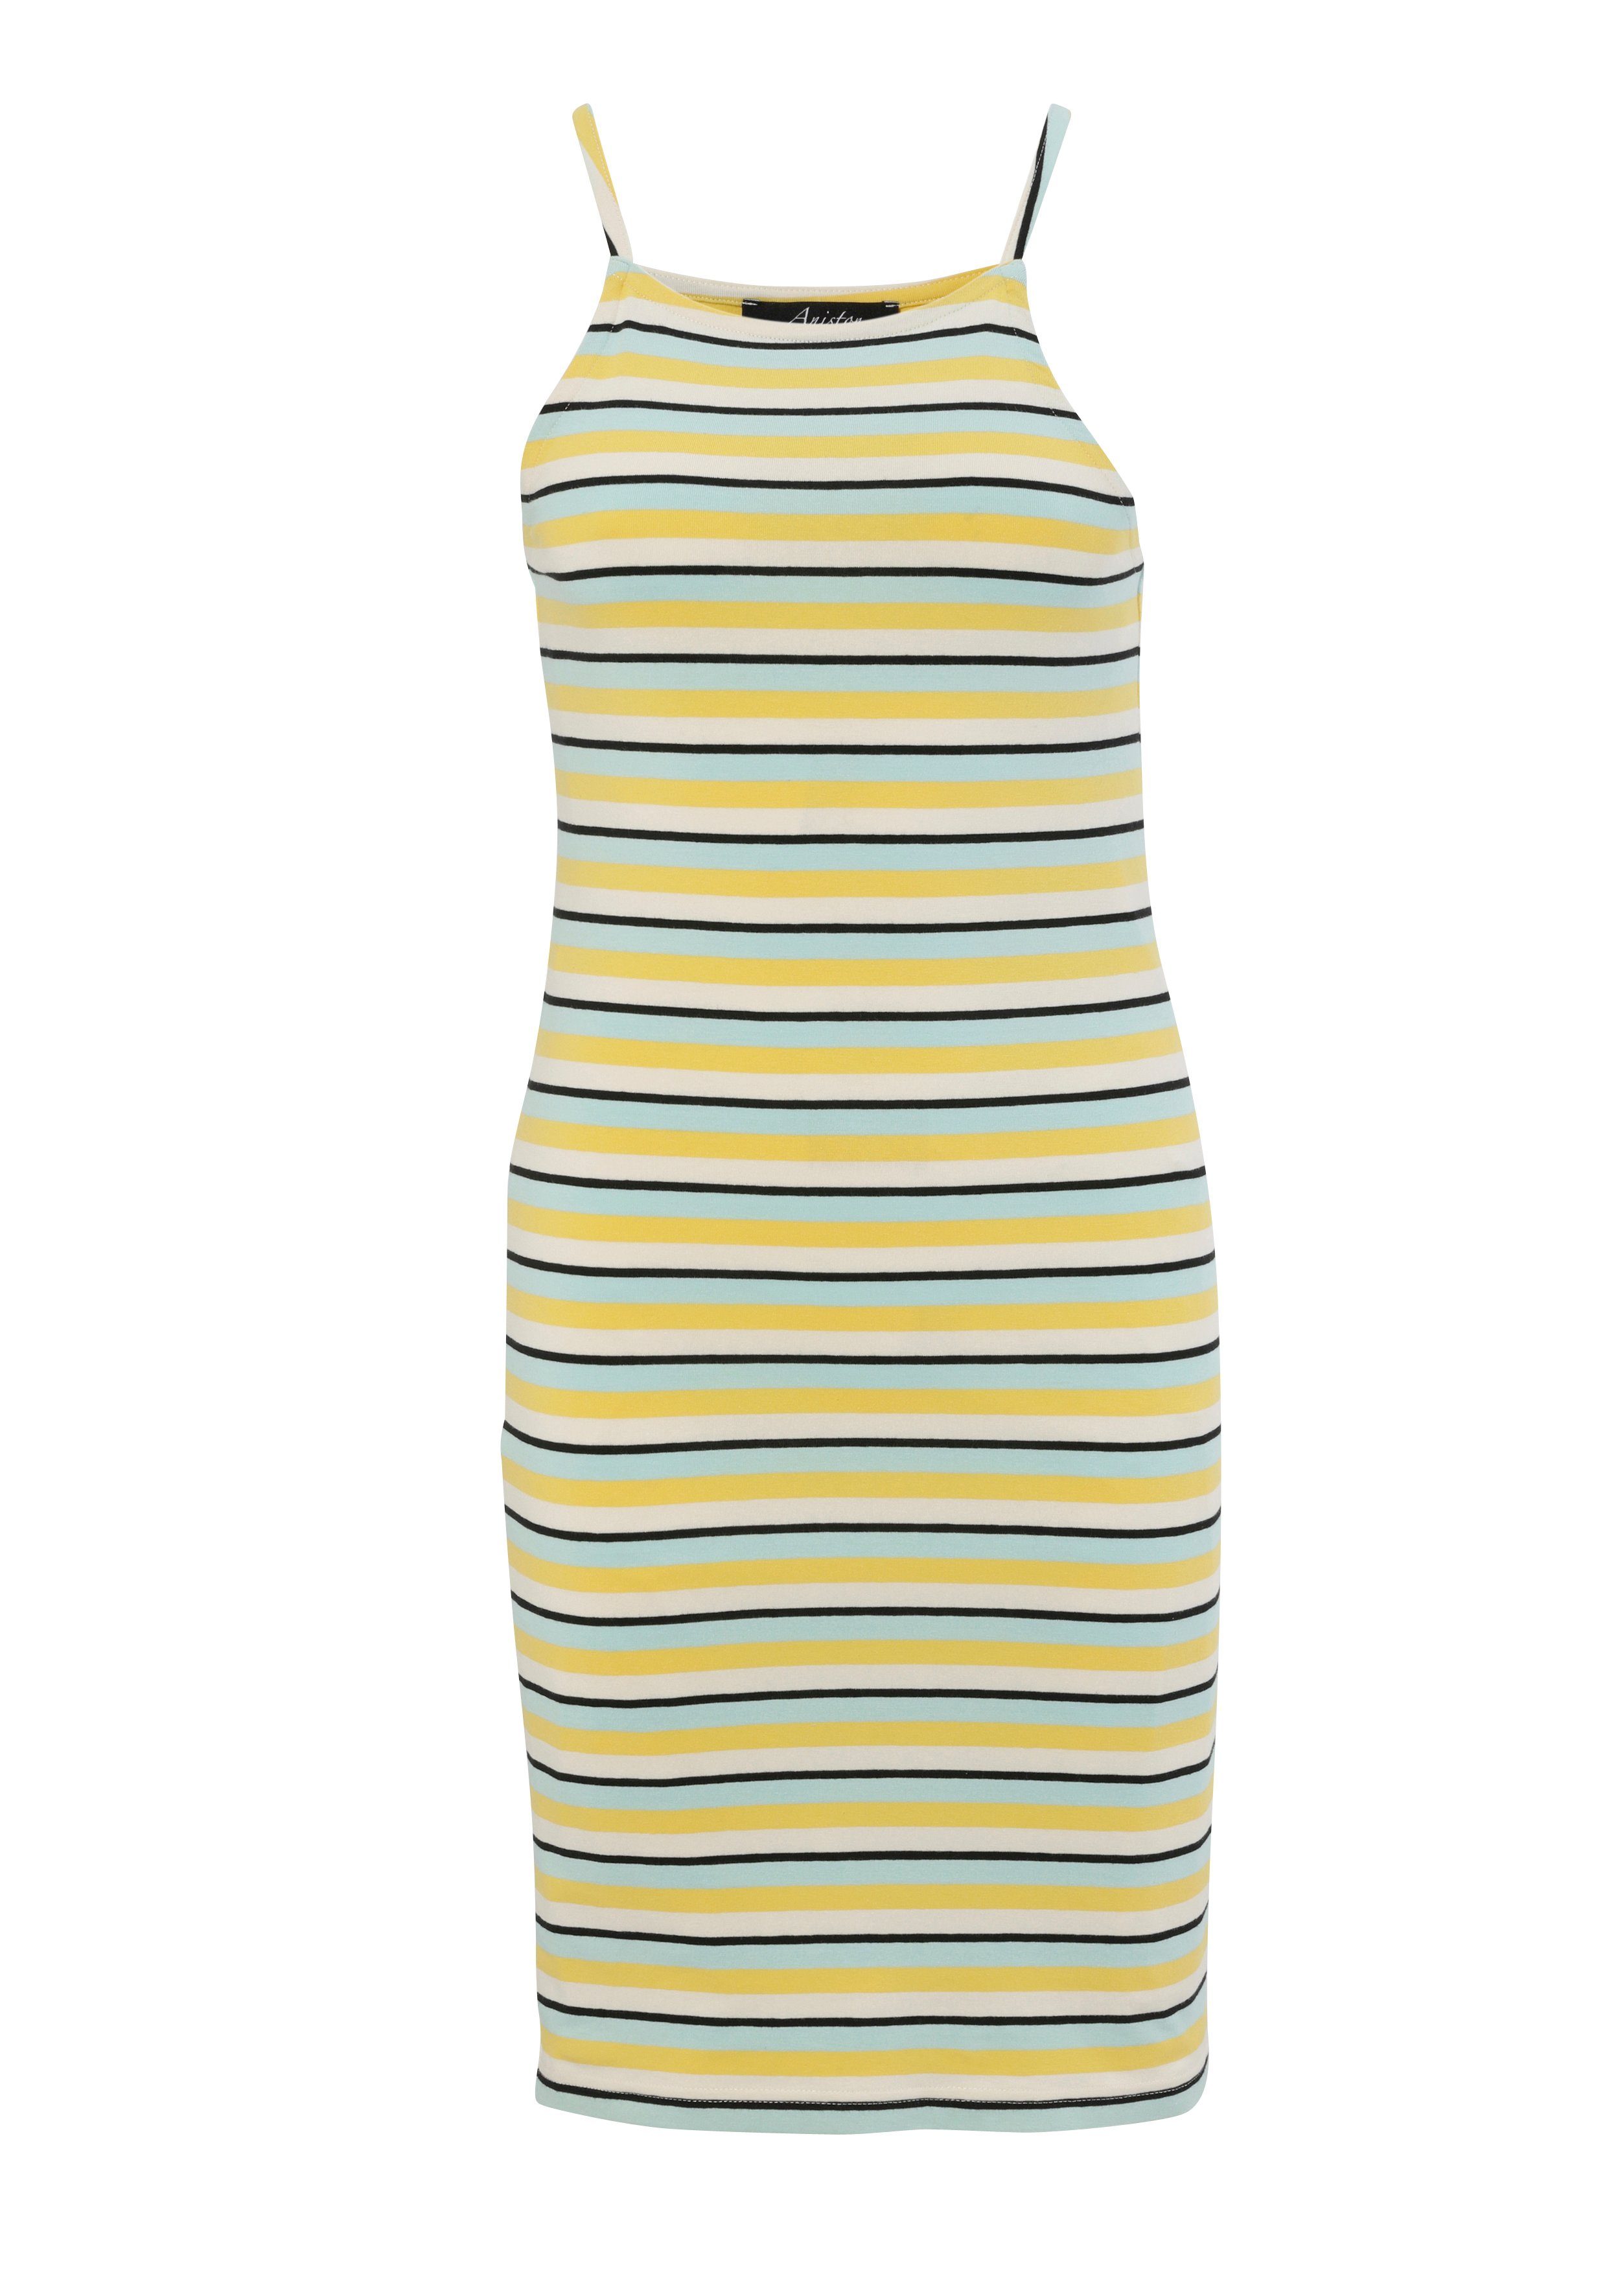 oder CASUAL die - bunt gestreift Aniston du Marine-Look helltürkis-gelb-wollweiß-schwarz hast Sommerkleid Wahl